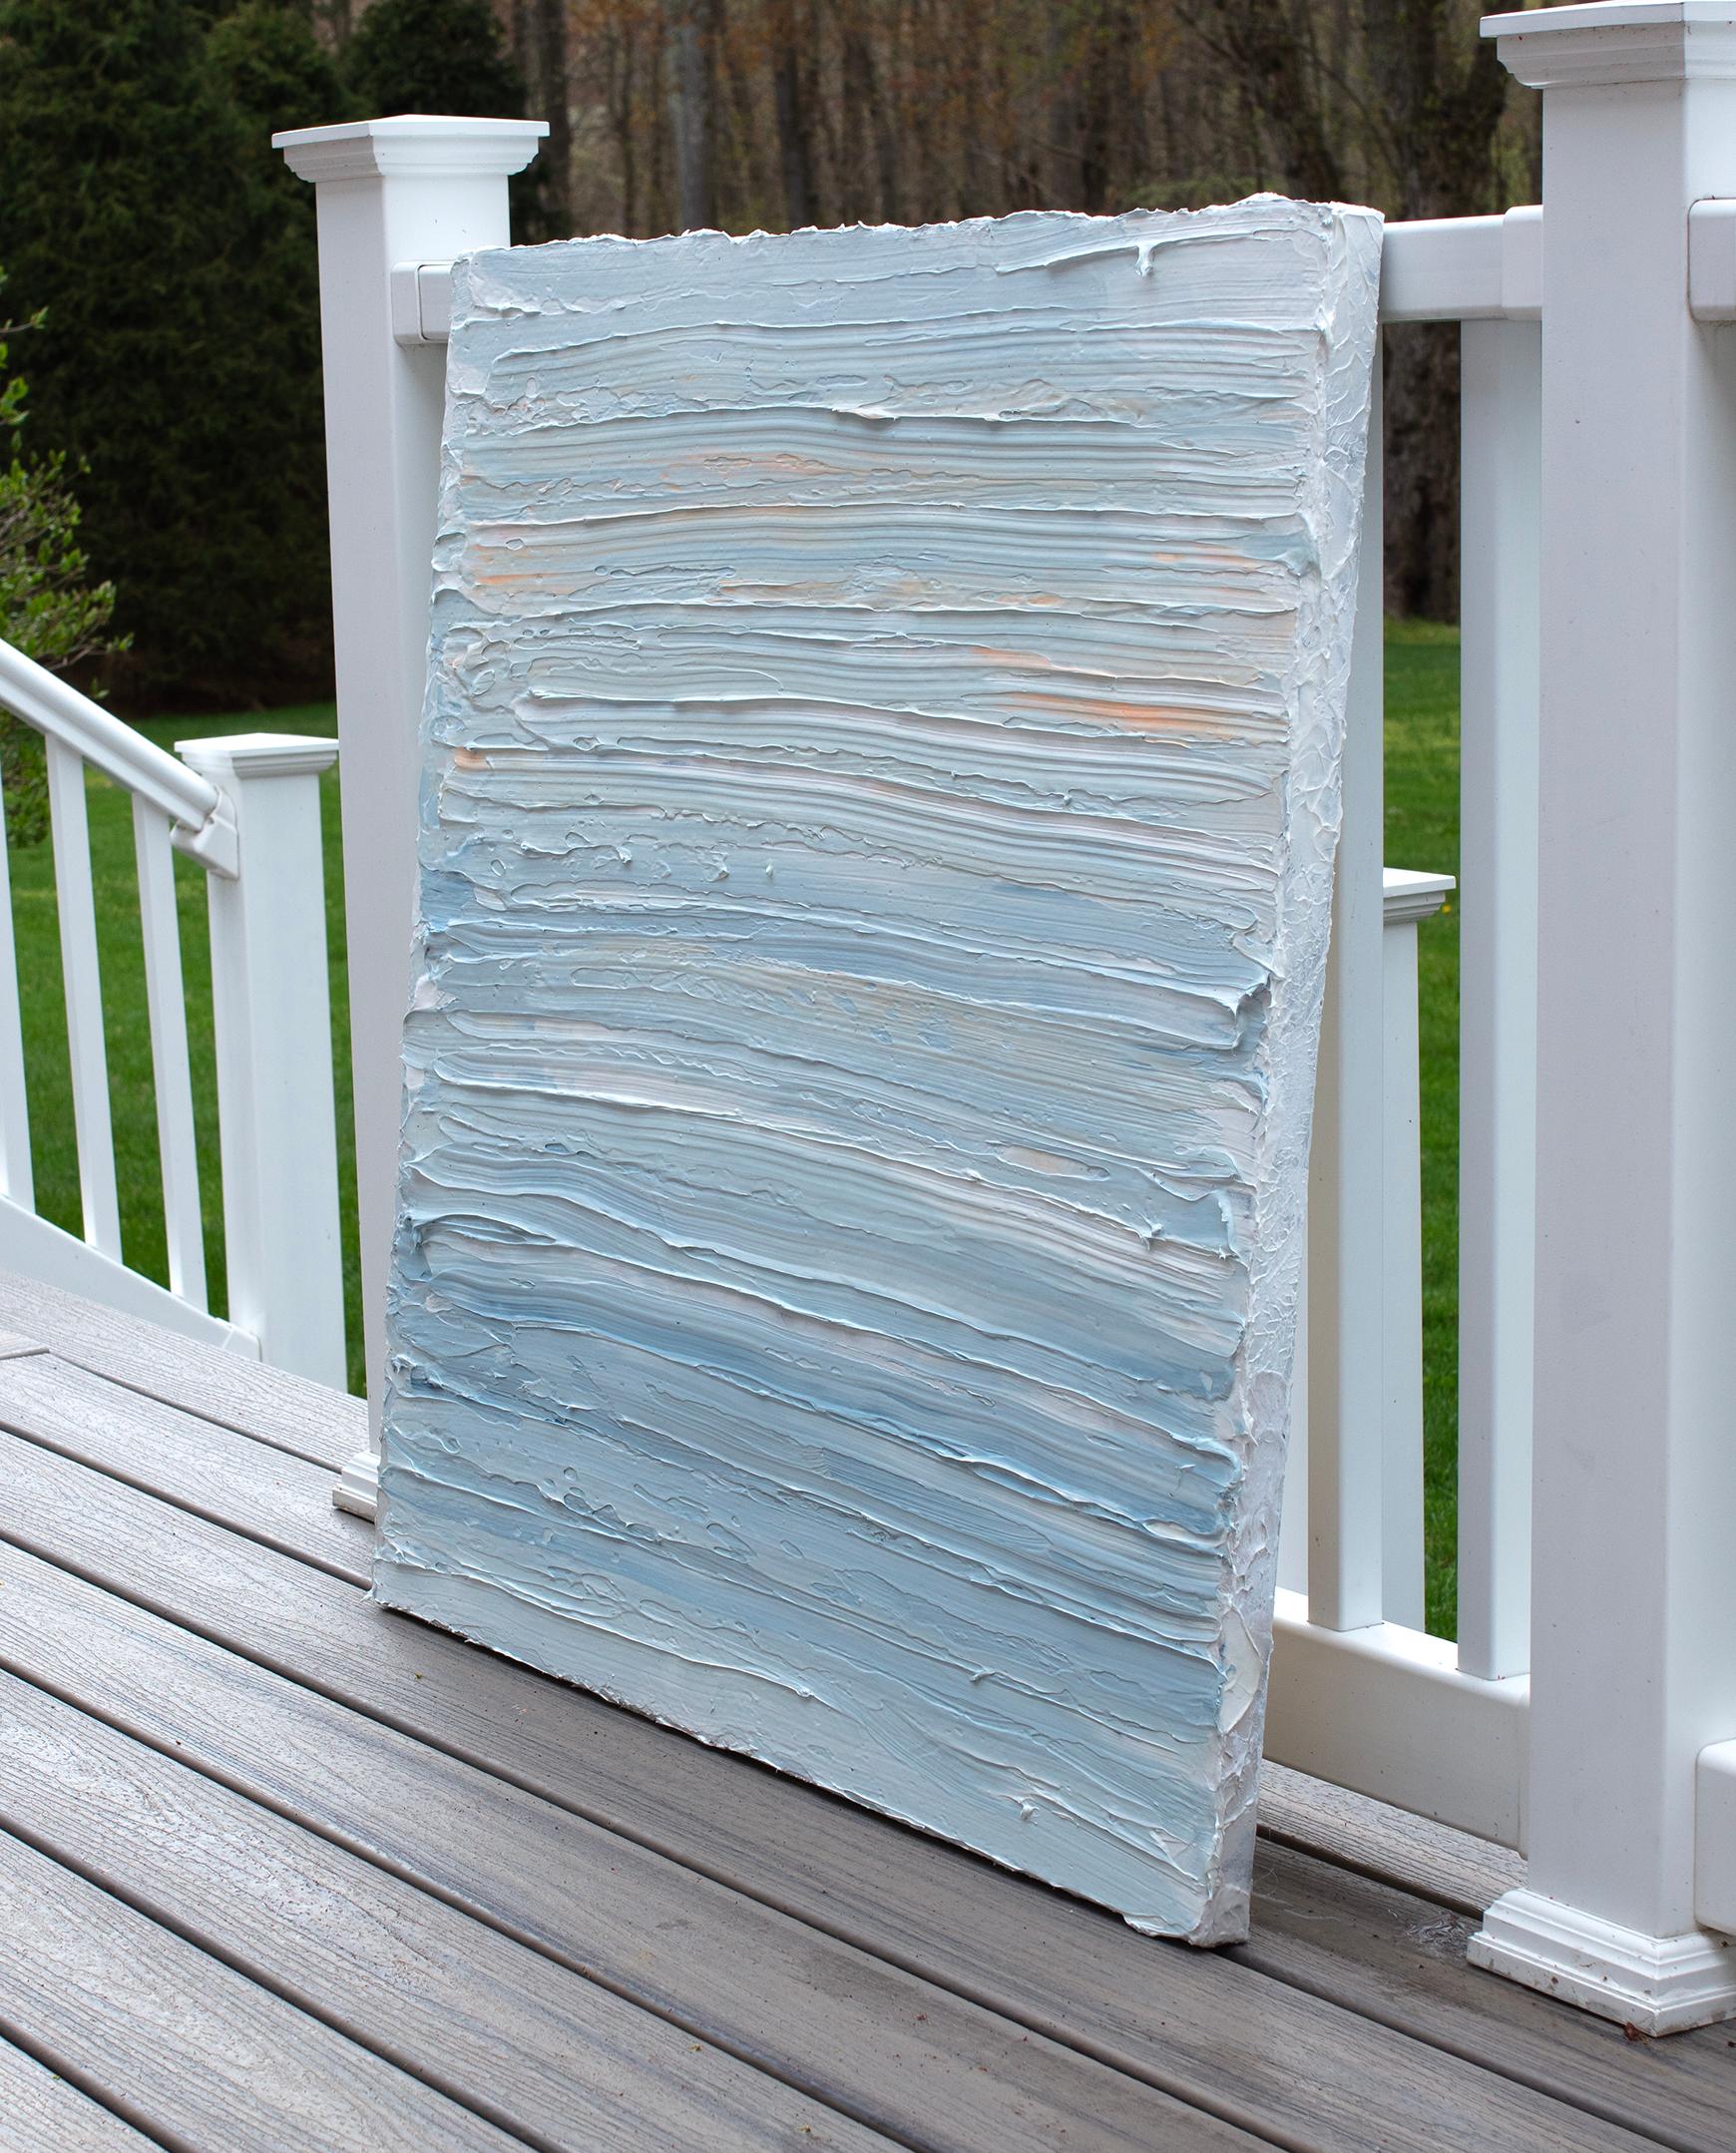 Cette peinture abstraite de Teodora Guererra présente une palette légère et froide de bleu et de blanc avec de subtils accents d'orange en haut de la composition. L'artiste applique d'épaisses couches de peinture à l'huile dans des gestes larges et